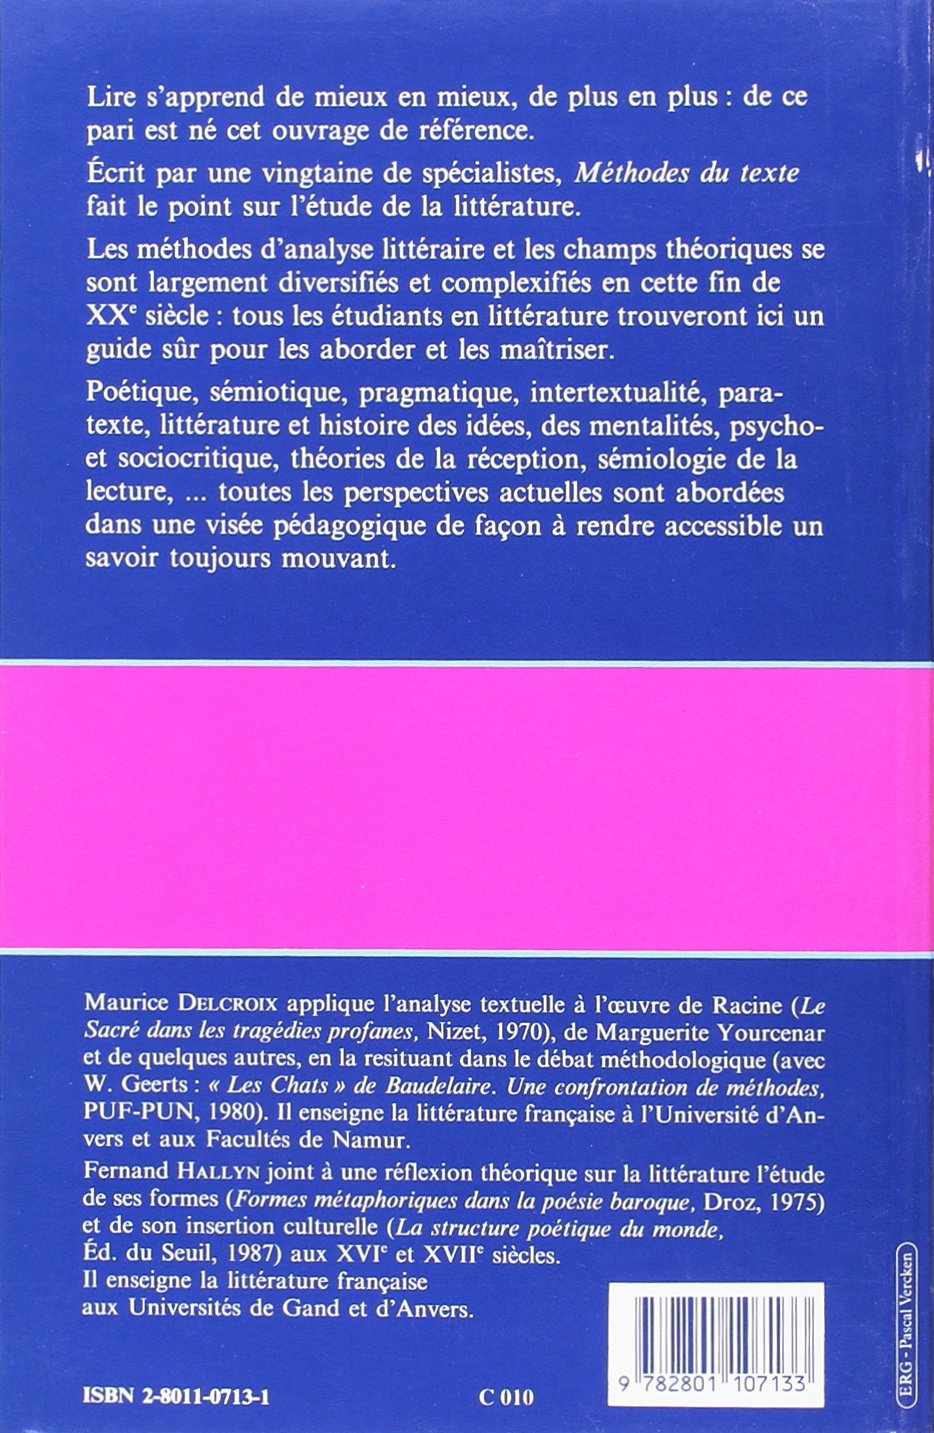 Introduction aux études littéraires : Méthode du texte (Maurice Delcroix)